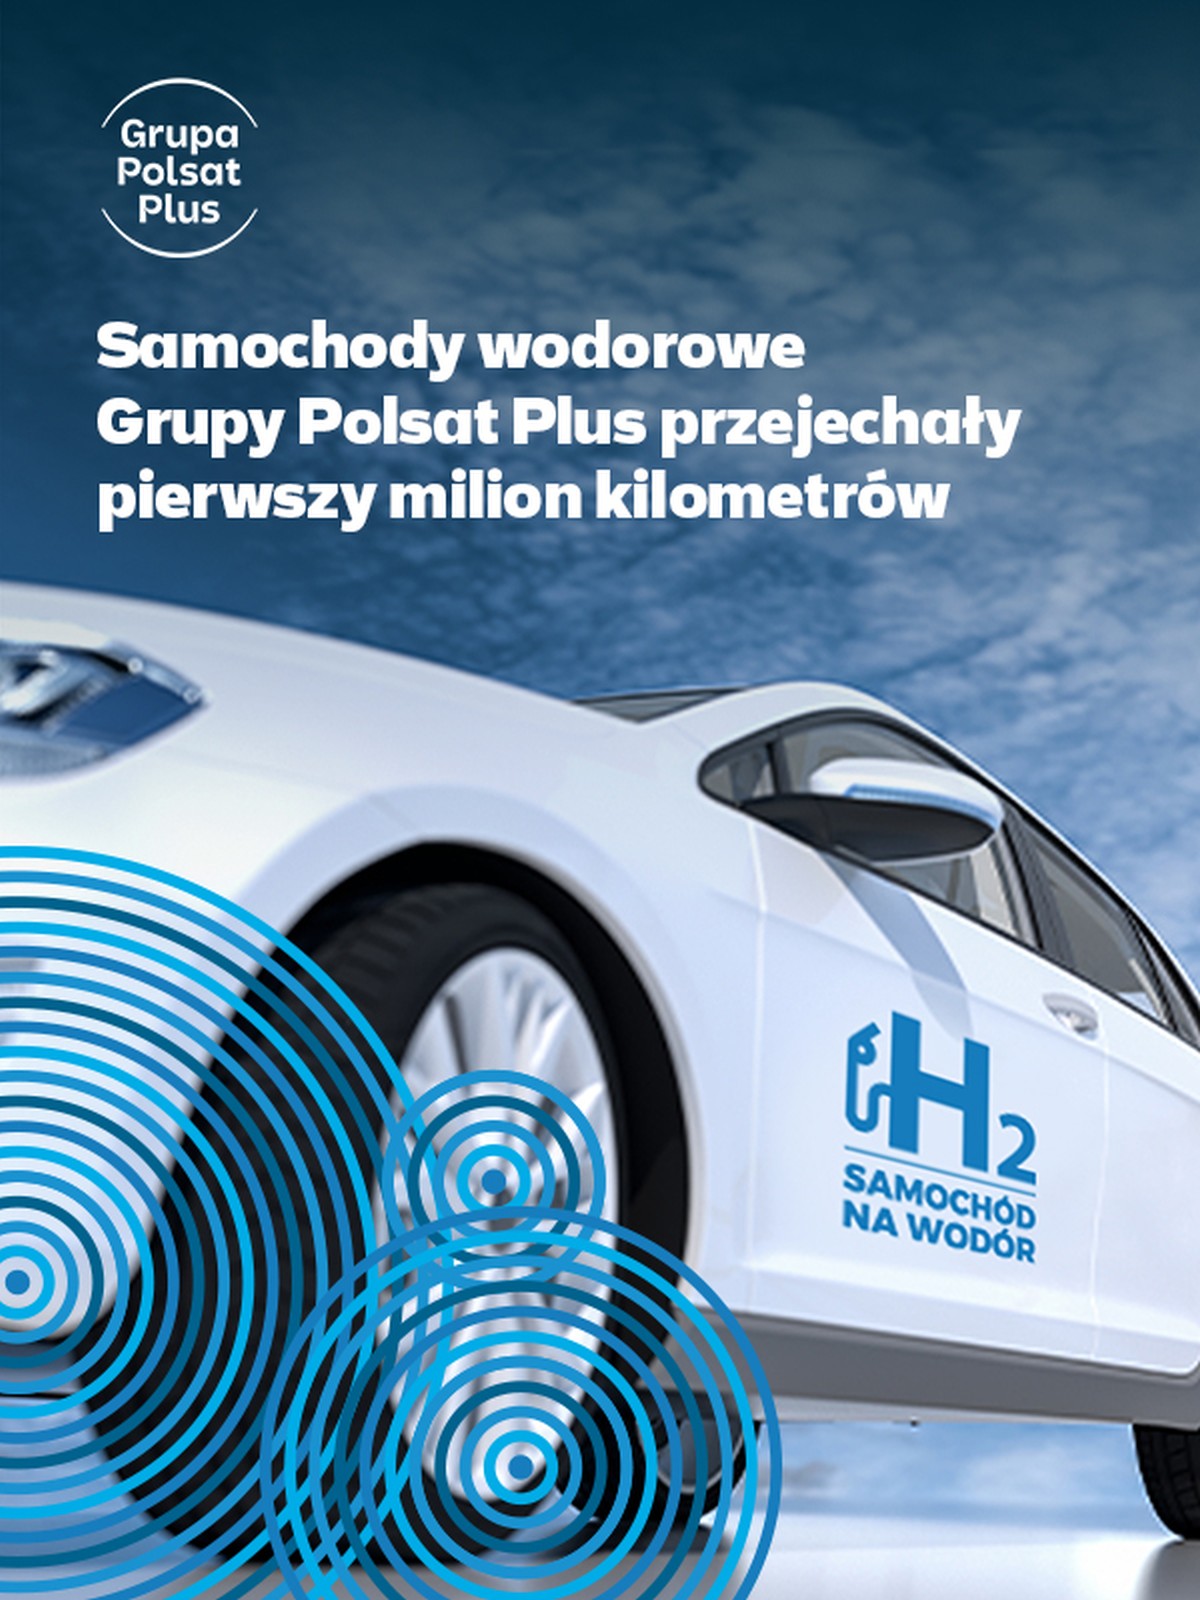 Grupa Polsat Plus samochód na wodór